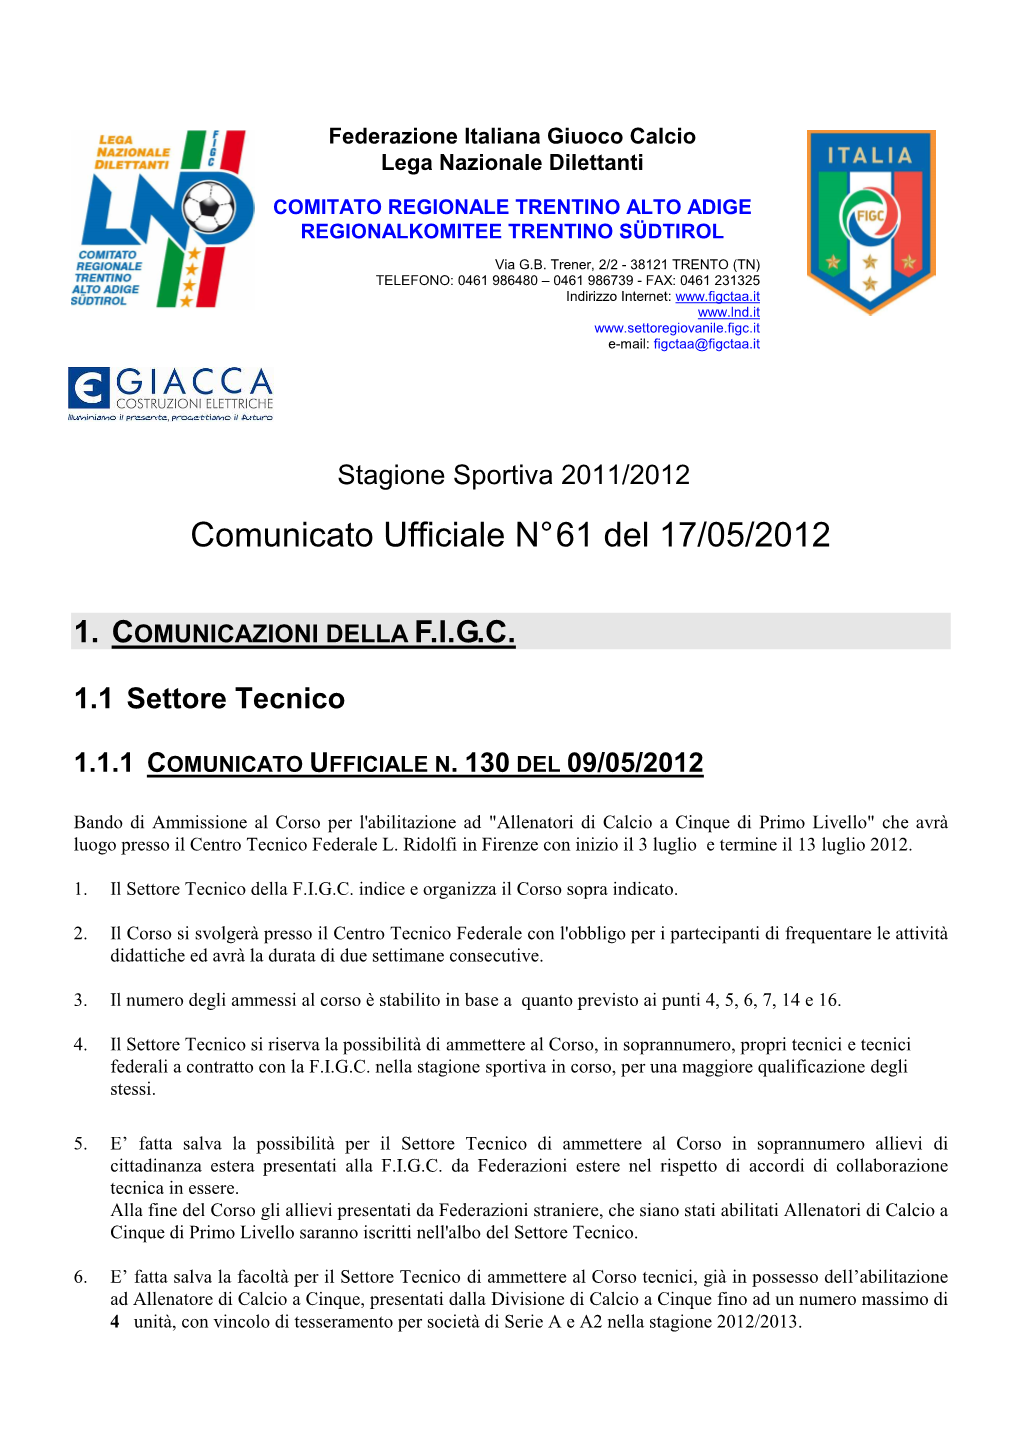 Comunicato Ufficiale N° 61 Del 17/05/2012